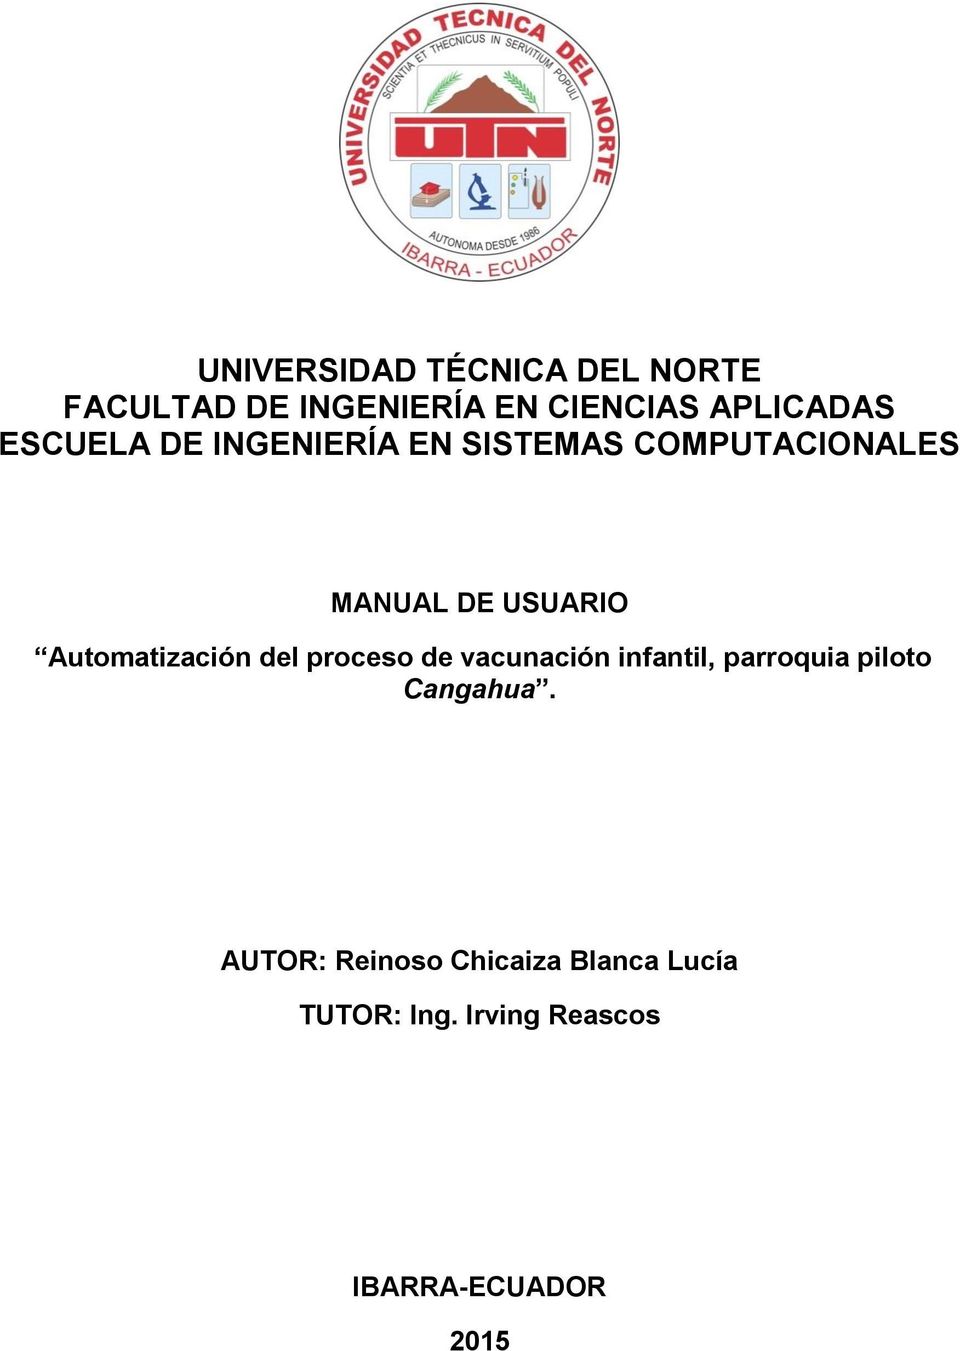 Automatización del proceso de vacunación infantil, parroquia piloto Cangahua.